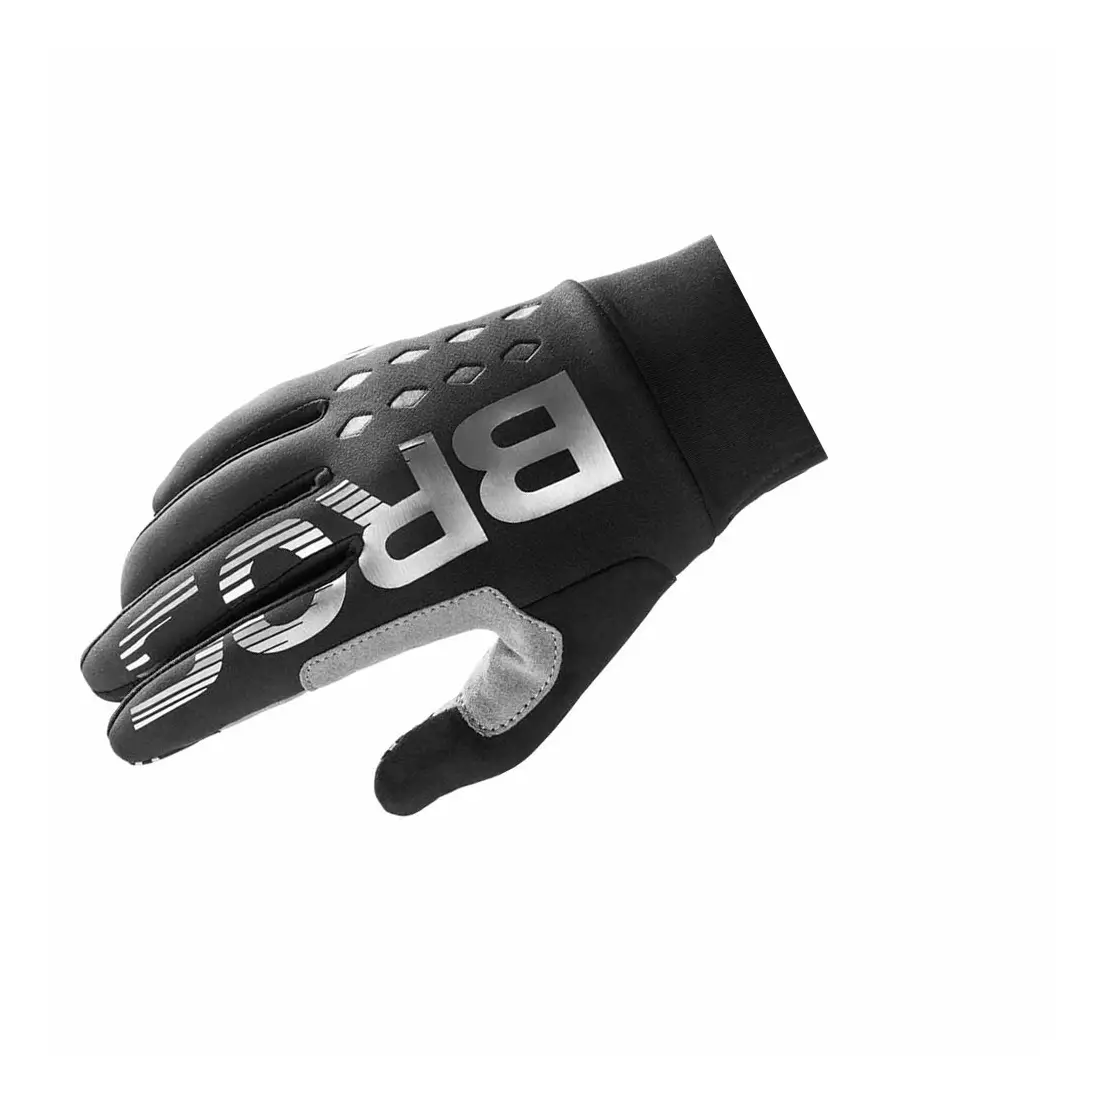 Rockbros mănuși de ciclism izolate toamna, negre S209BK